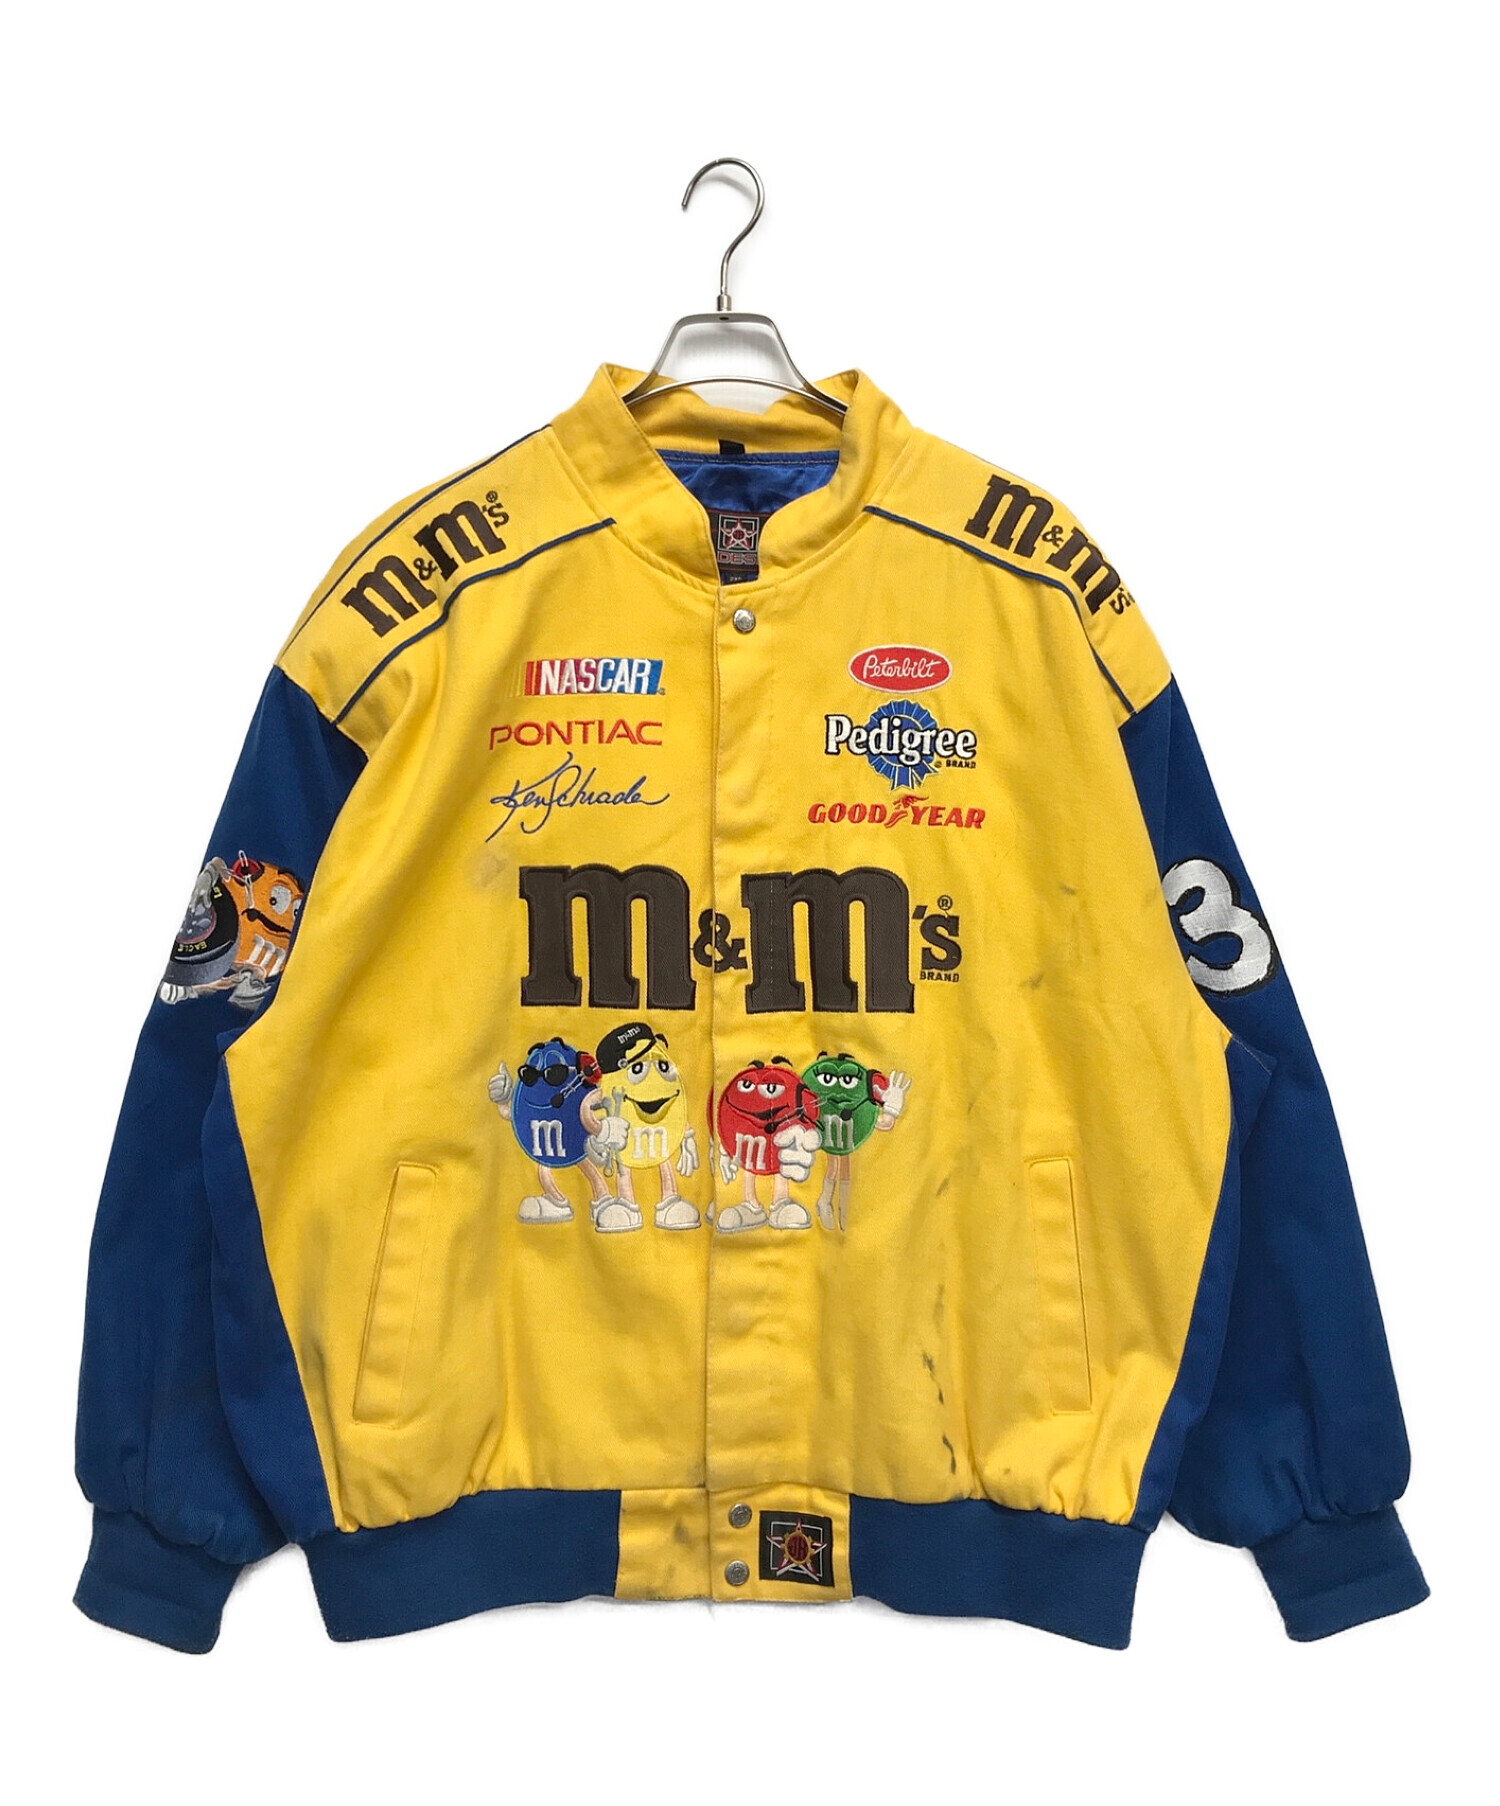 JH DESIGN (ジェイエイチデザイン) M&M'sレーシングジャケット イエロー×ブルー サイズ:2XL